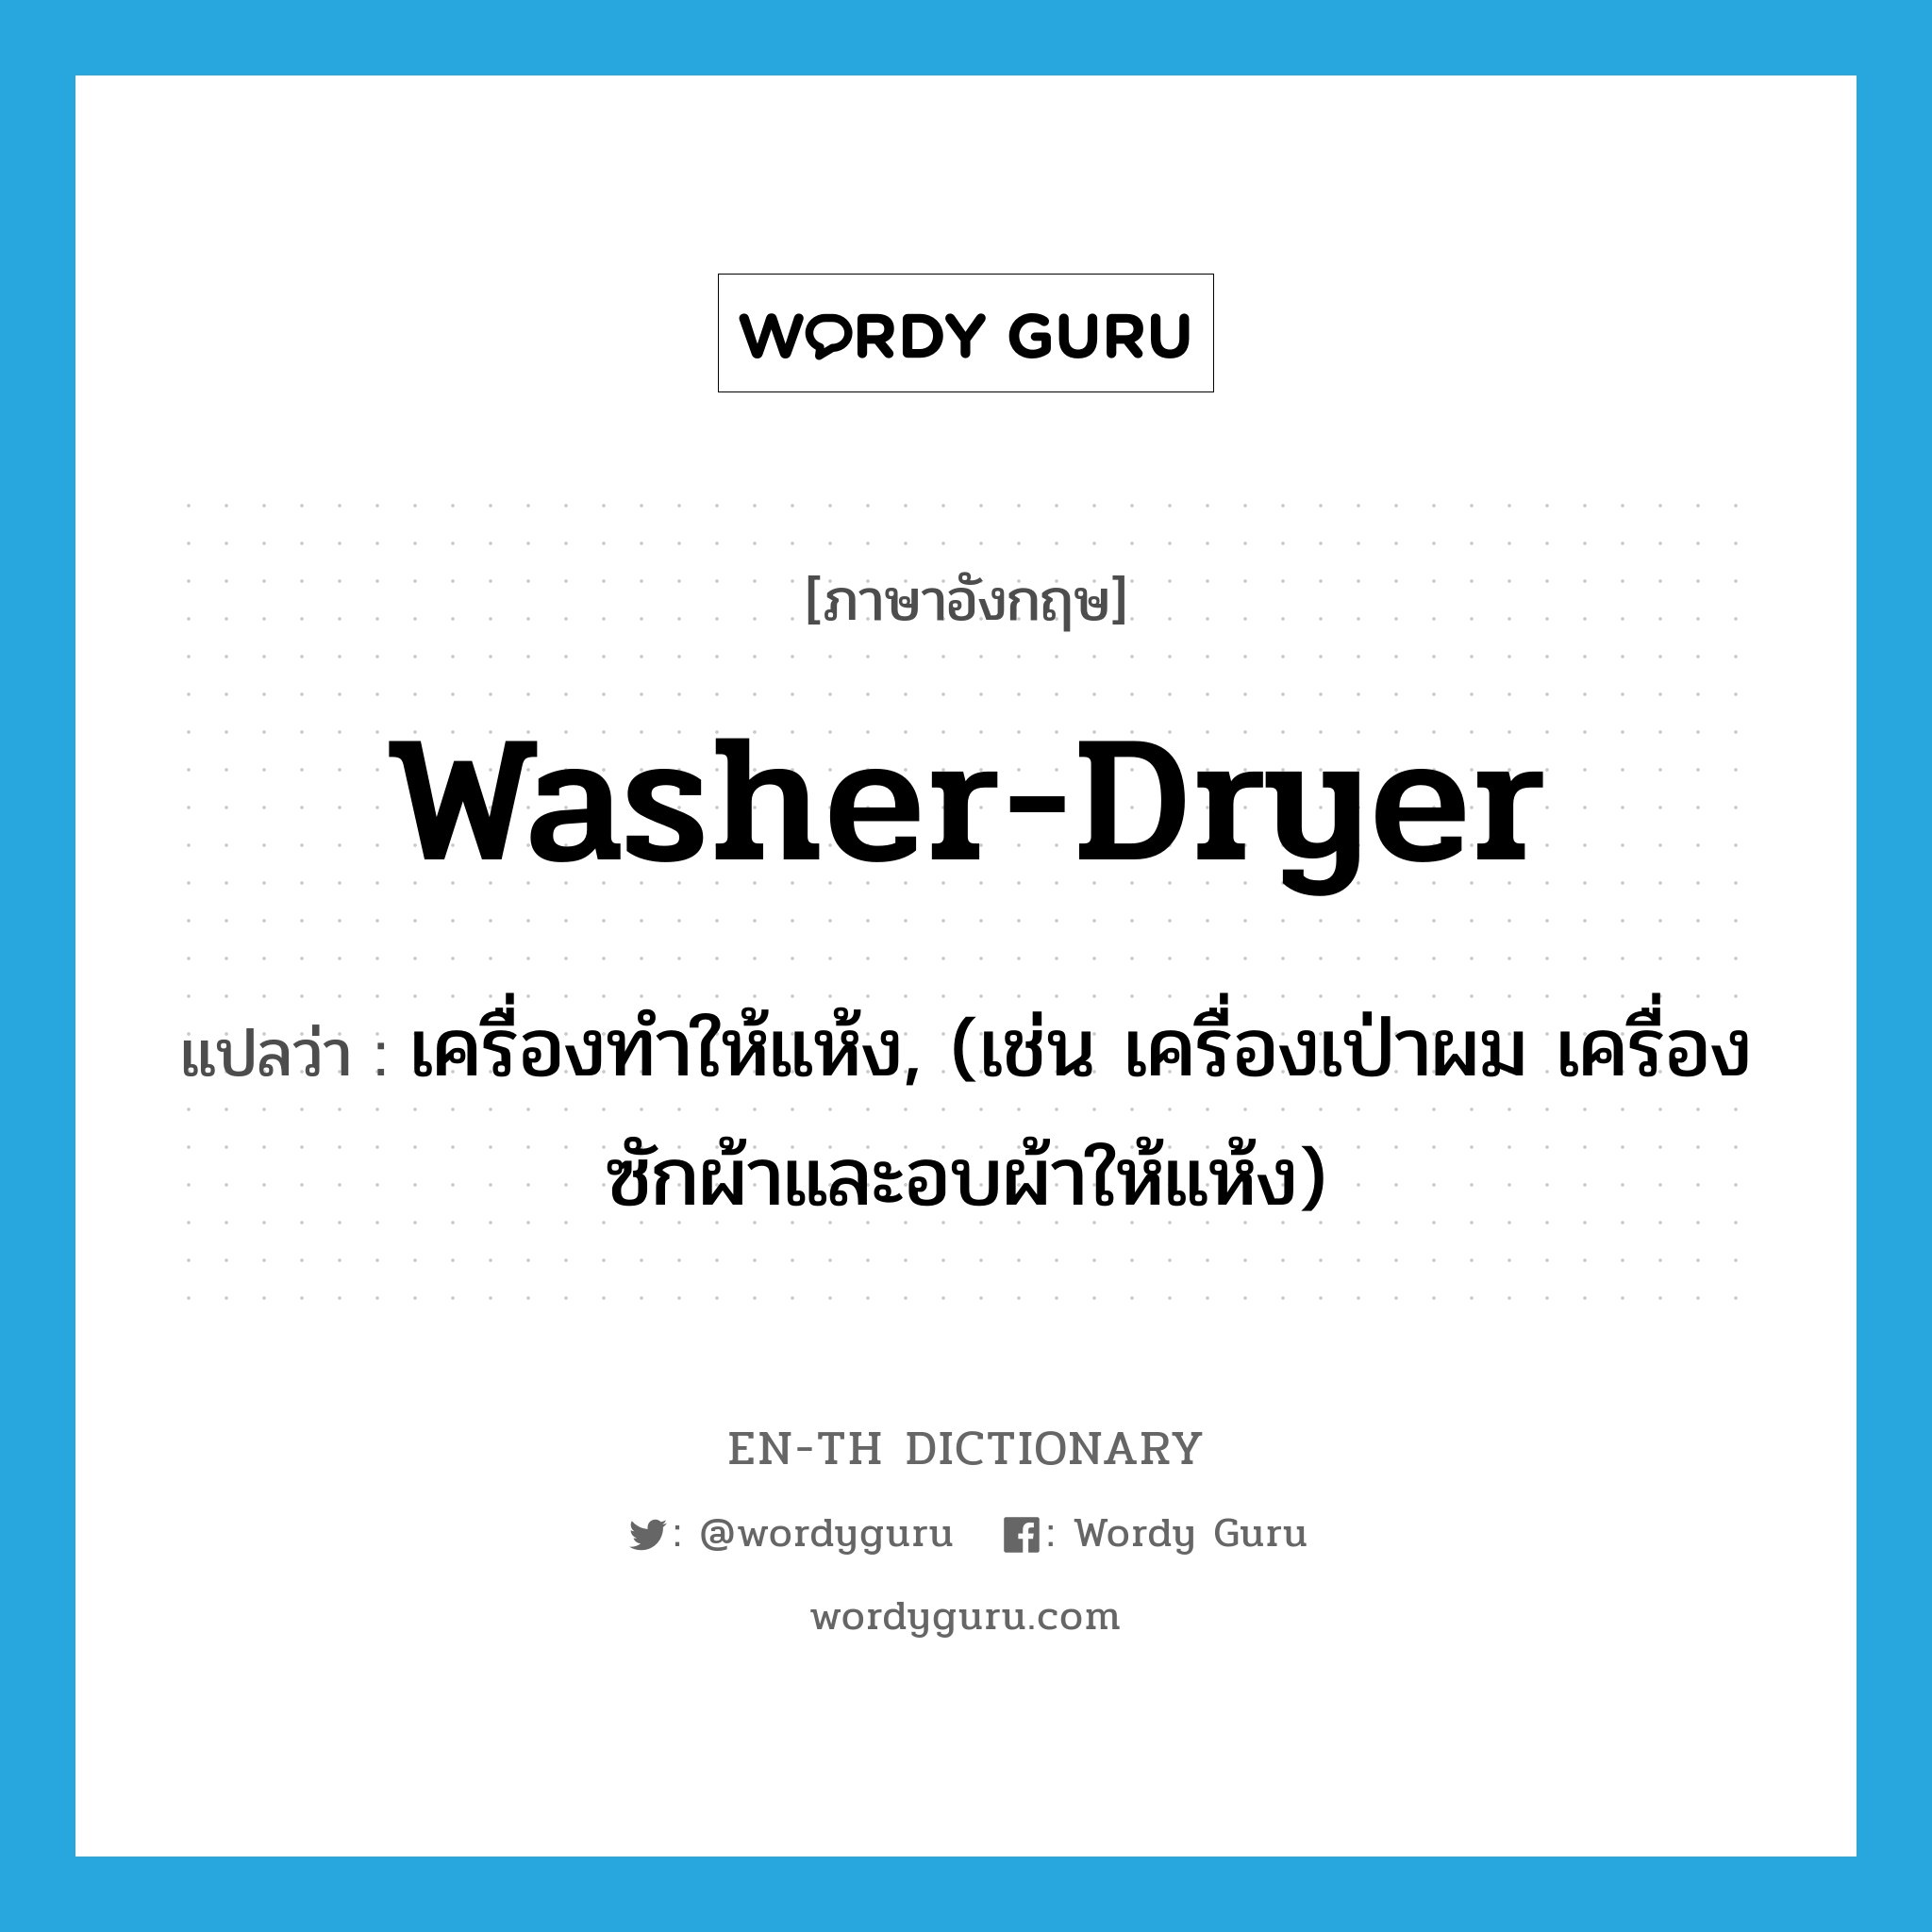 เครื่องทำให้แห้ง, (เช่น เครื่องเป่าผม เครื่องซักผ้าและอบผ้าให้แห้ง) ภาษาอังกฤษ?, คำศัพท์ภาษาอังกฤษ เครื่องทำให้แห้ง, (เช่น เครื่องเป่าผม เครื่องซักผ้าและอบผ้าให้แห้ง) แปลว่า washer-dryer ประเภท N หมวด N